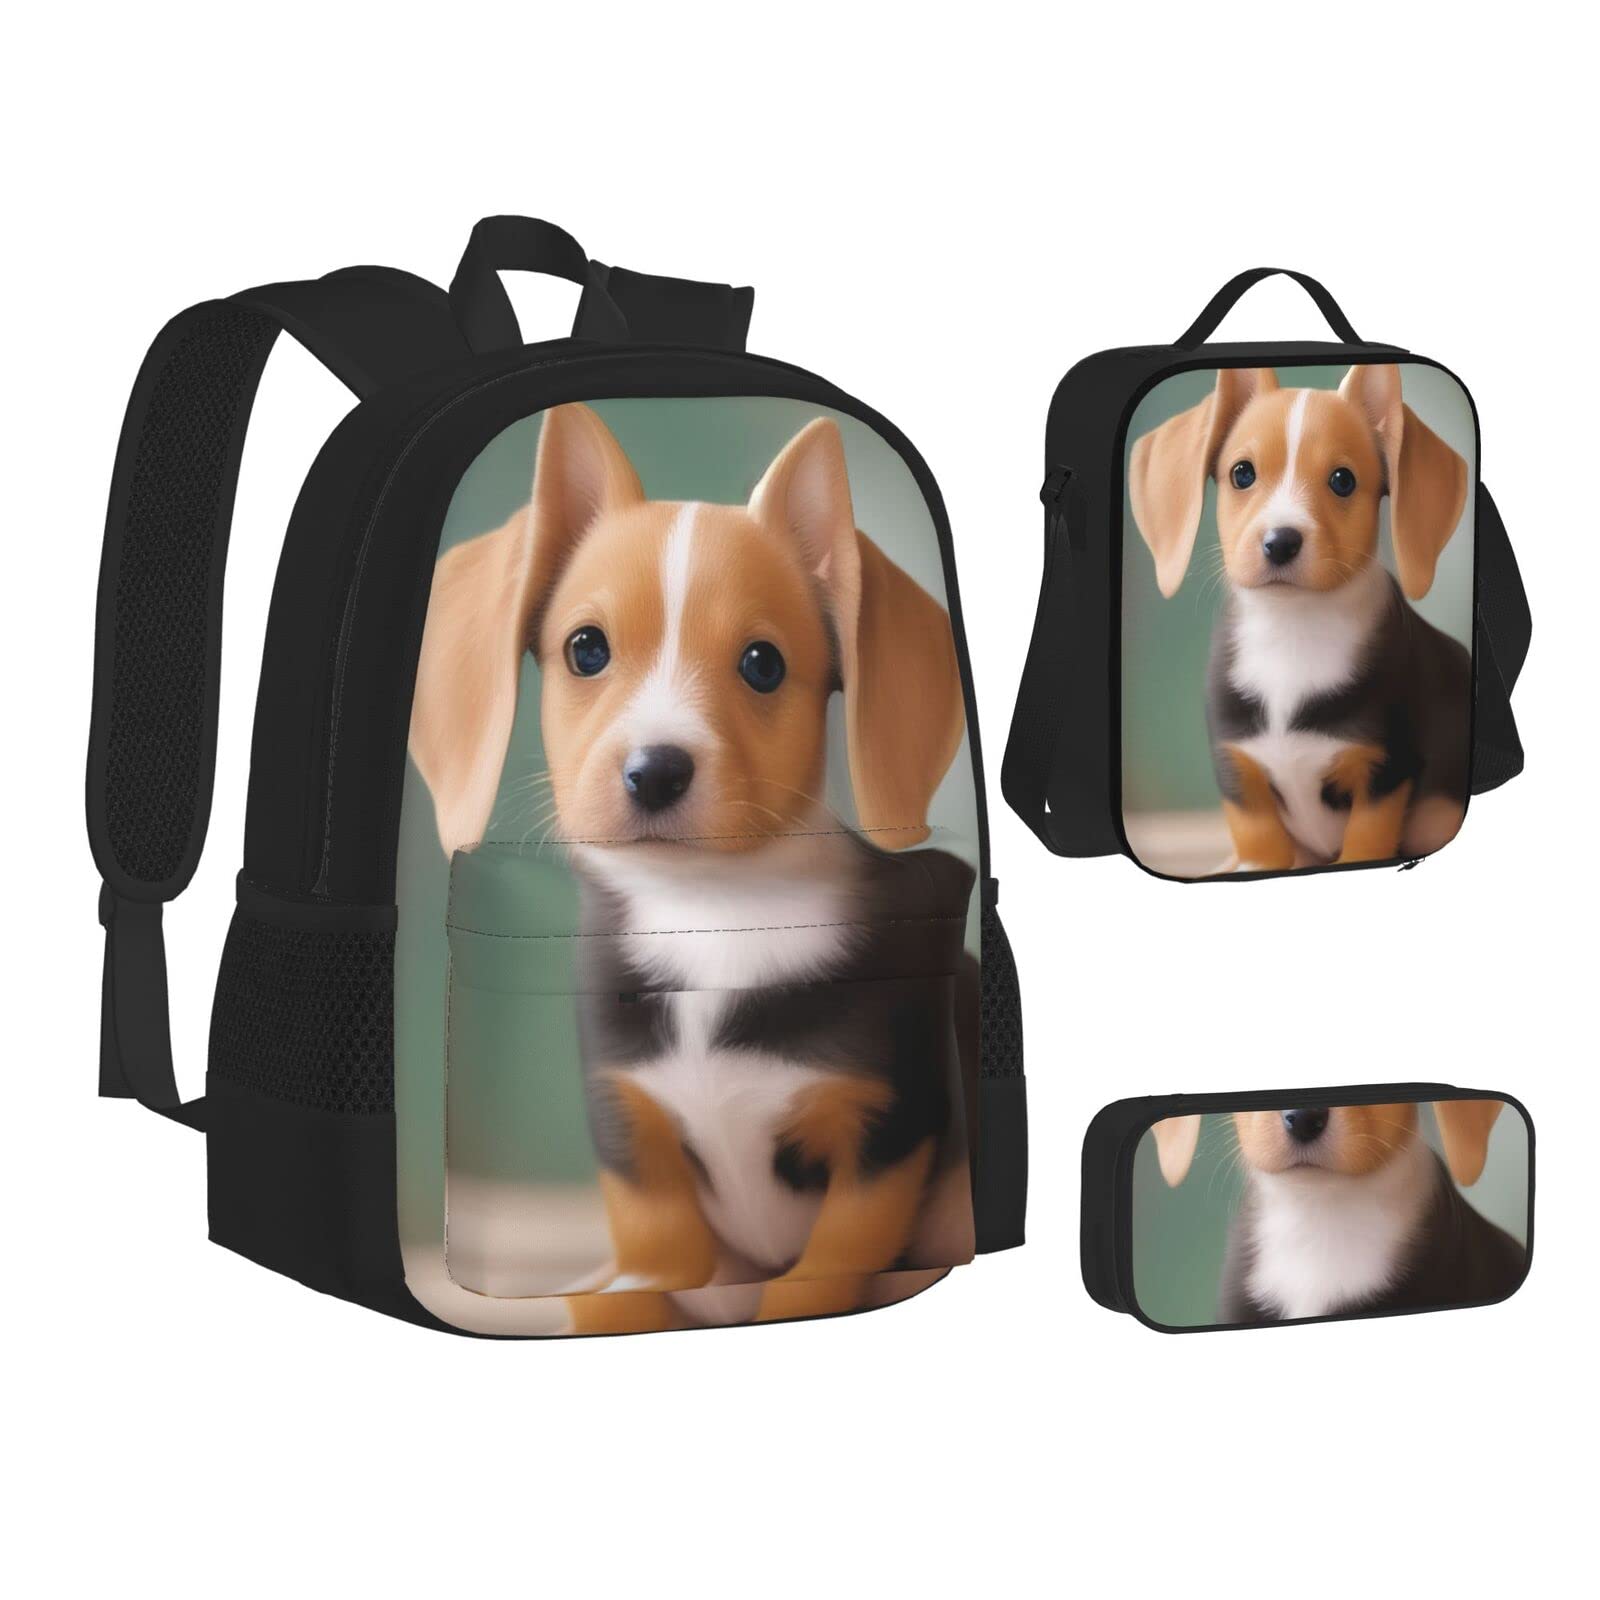 送料無料Big Eared Cute Dog Three-Piece Backpack Set With Pocket Backpack Cross-Body Lunch Bag Pen Bag For Travel Daypack